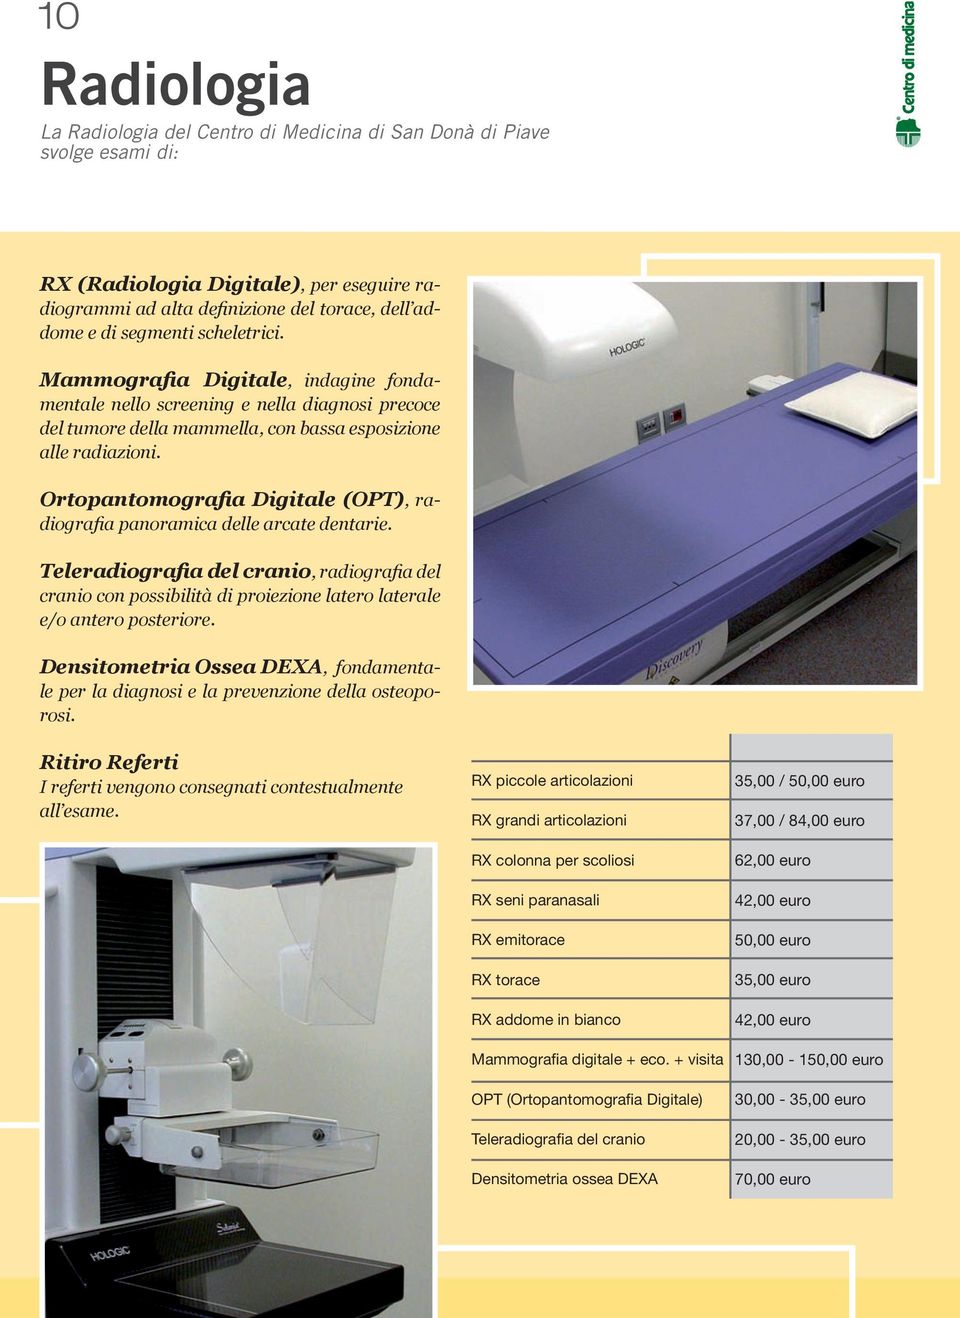 Ortopantomografia Digitale (OPT), radiografia panoramica delle arcate dentarie. Teleradiografia del cranio, radiografia del cranio con possibilità di proiezione latero laterale e/o antero posteriore.